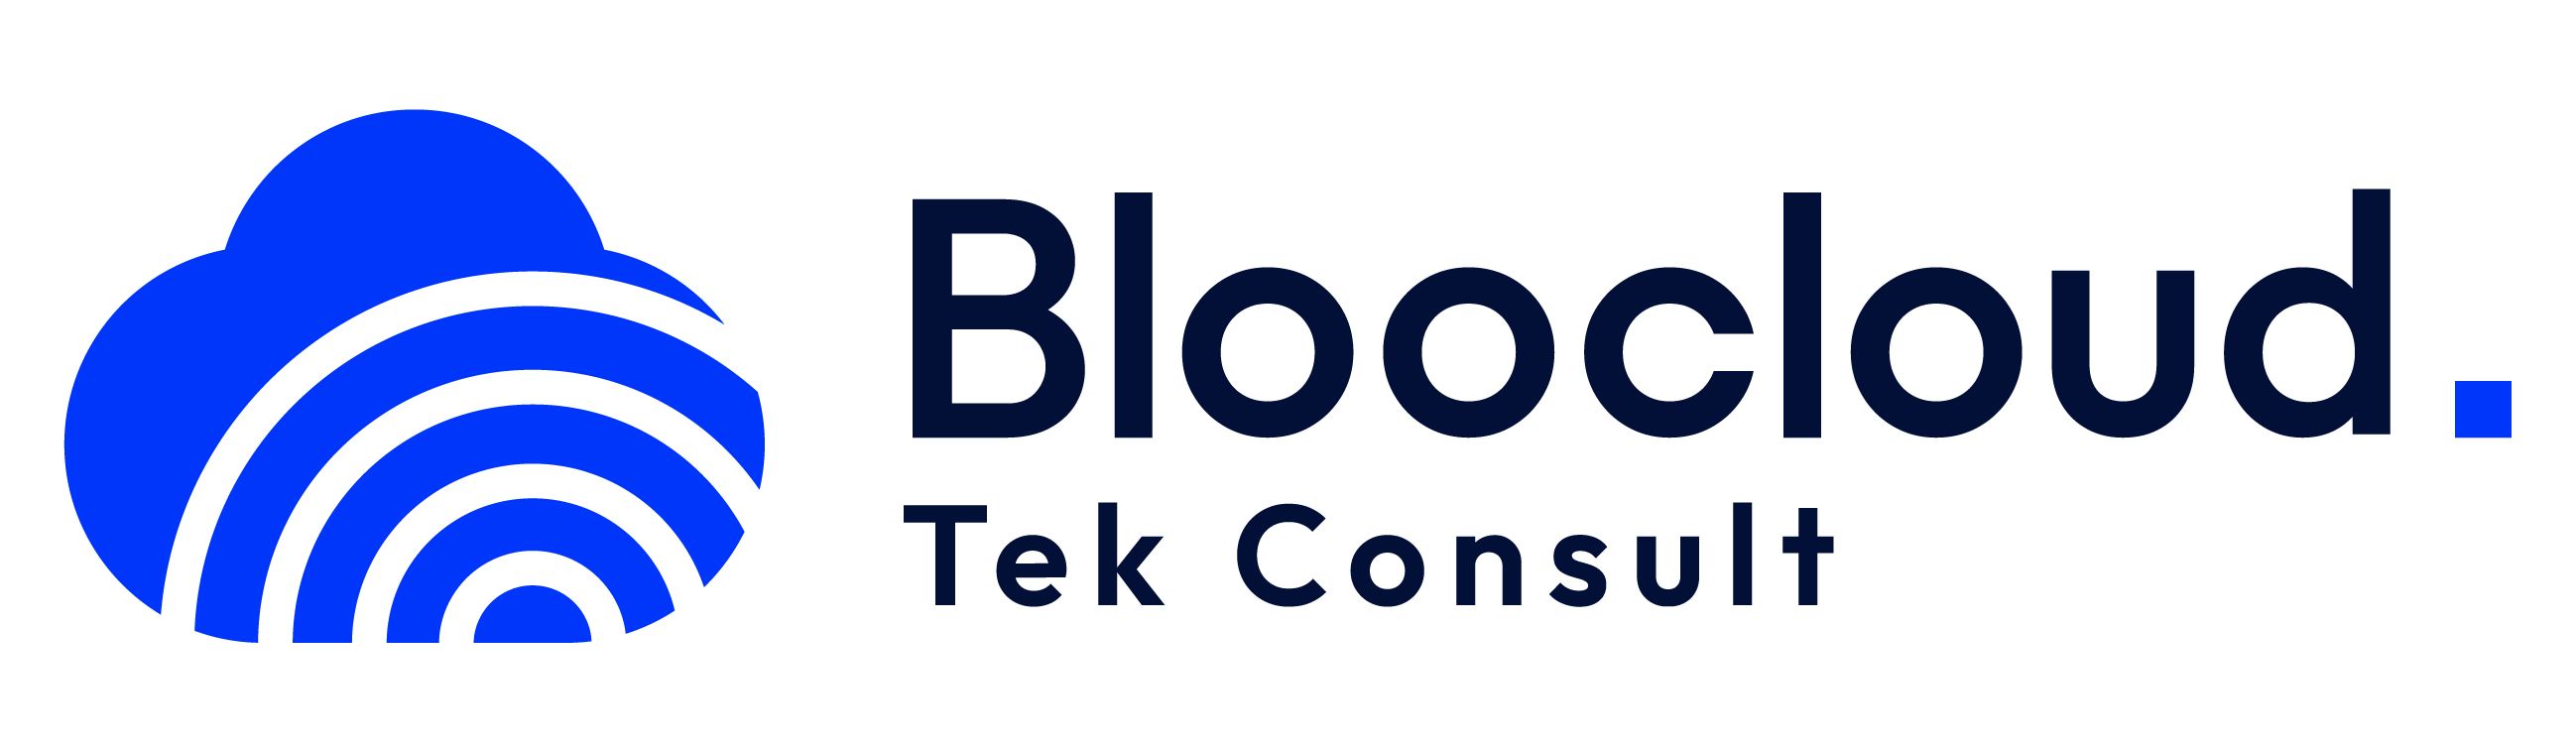 Bloo Cloud Tek Consult in Elioplus